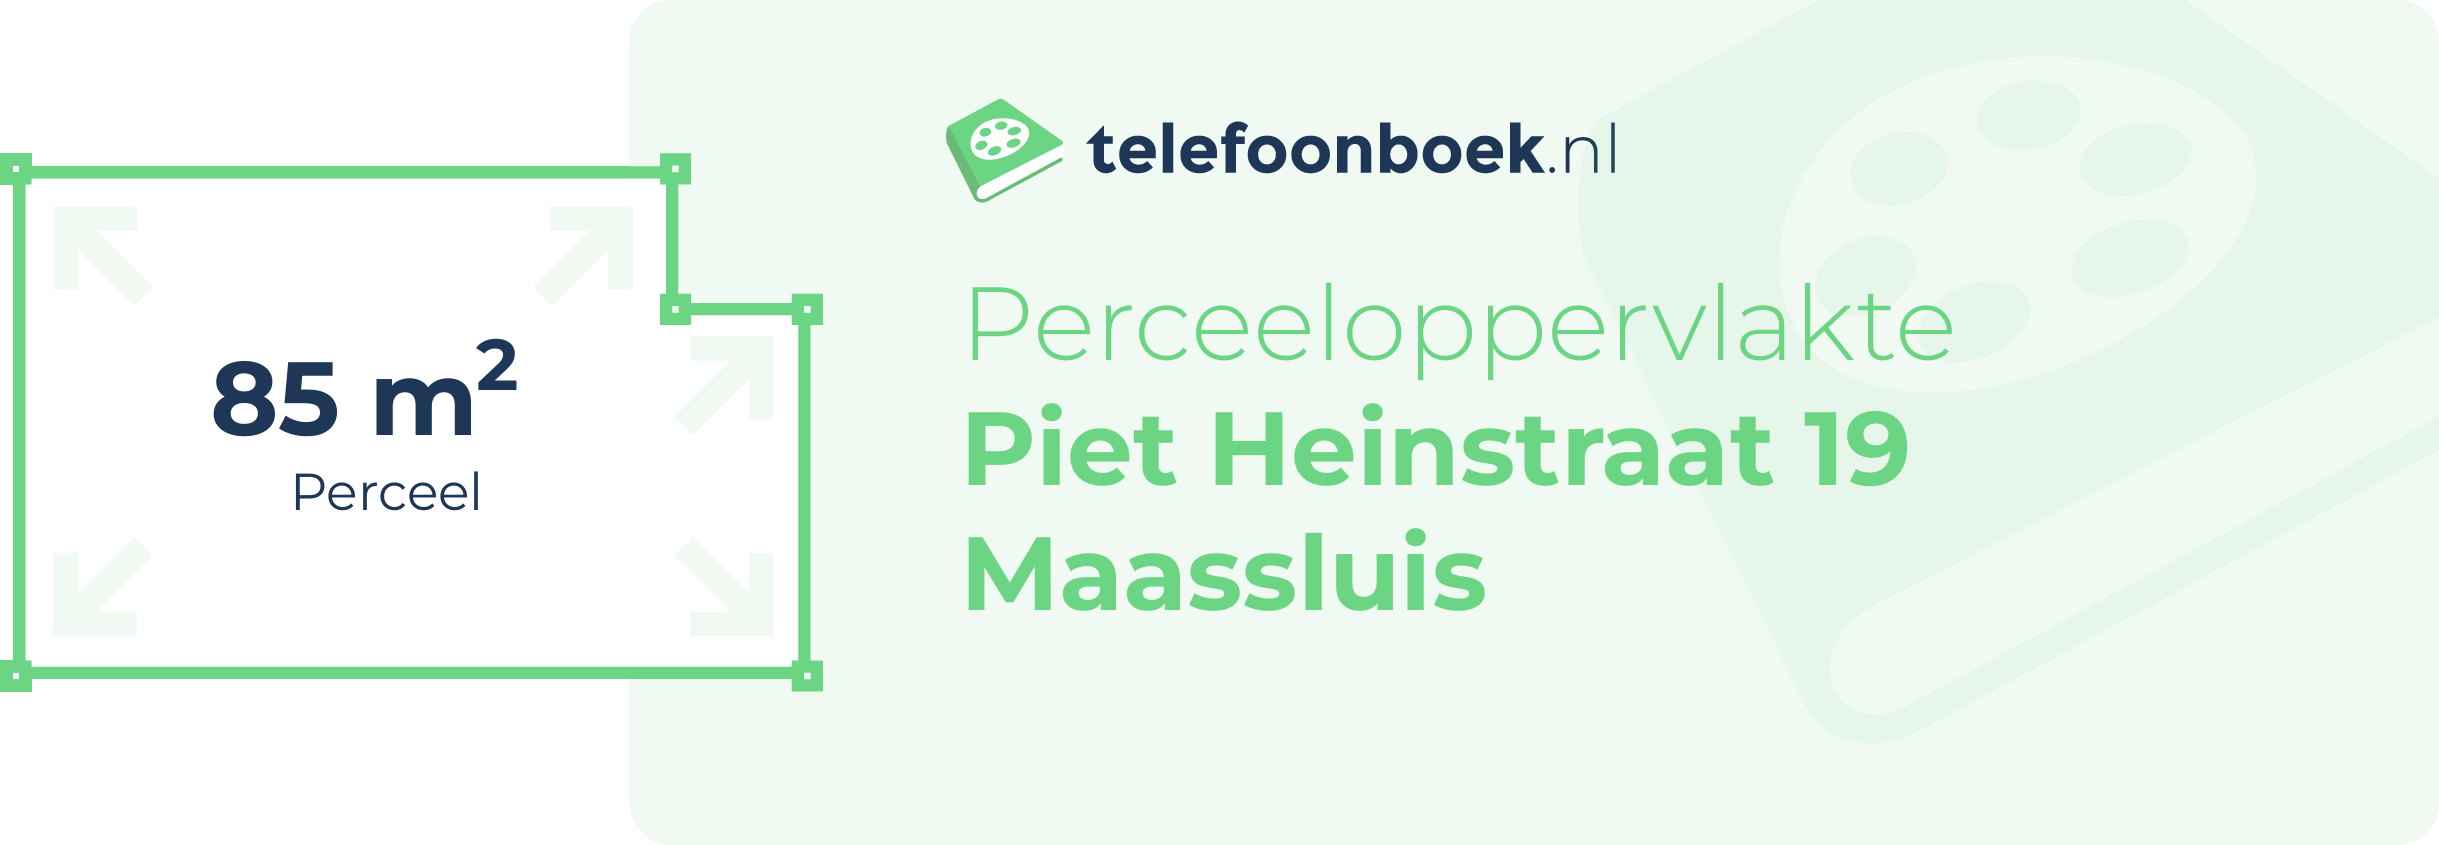 Perceeloppervlakte Piet Heinstraat 19 Maassluis